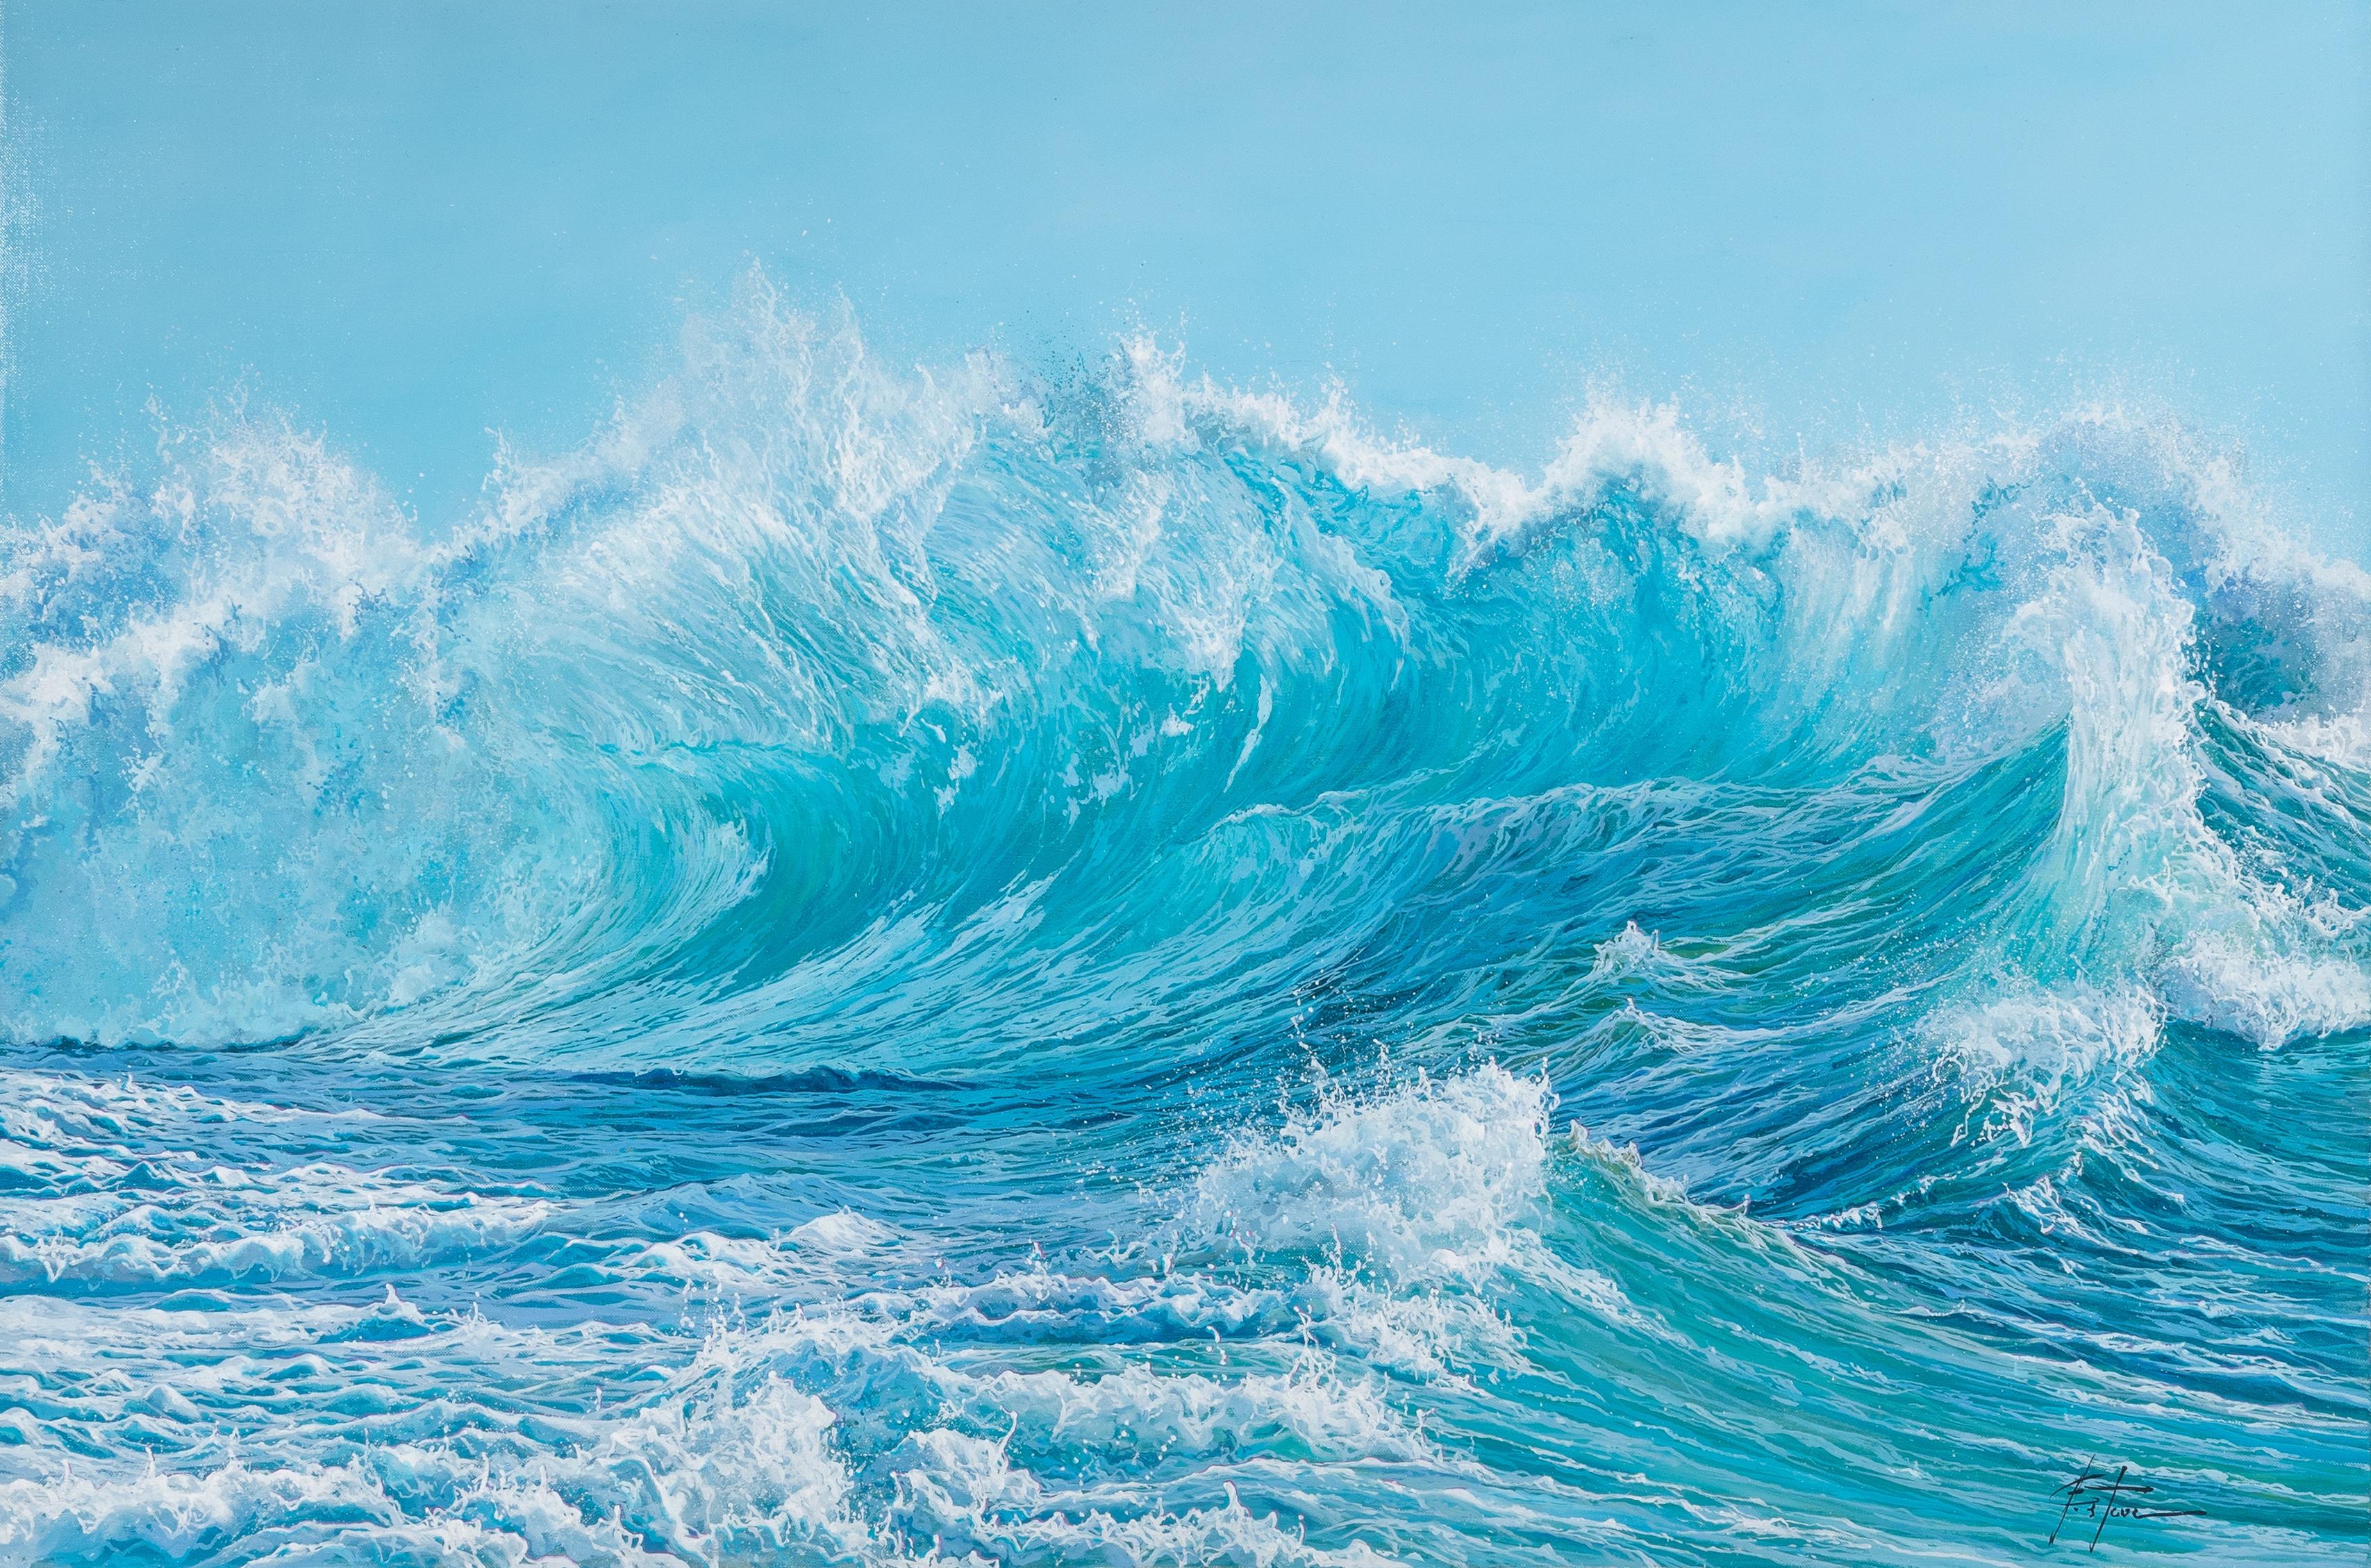 « Roaring seas », peinture contemporaine puissante de paysage marin bleu d'une vague qui s'effondre - Painting de Marc Esteve